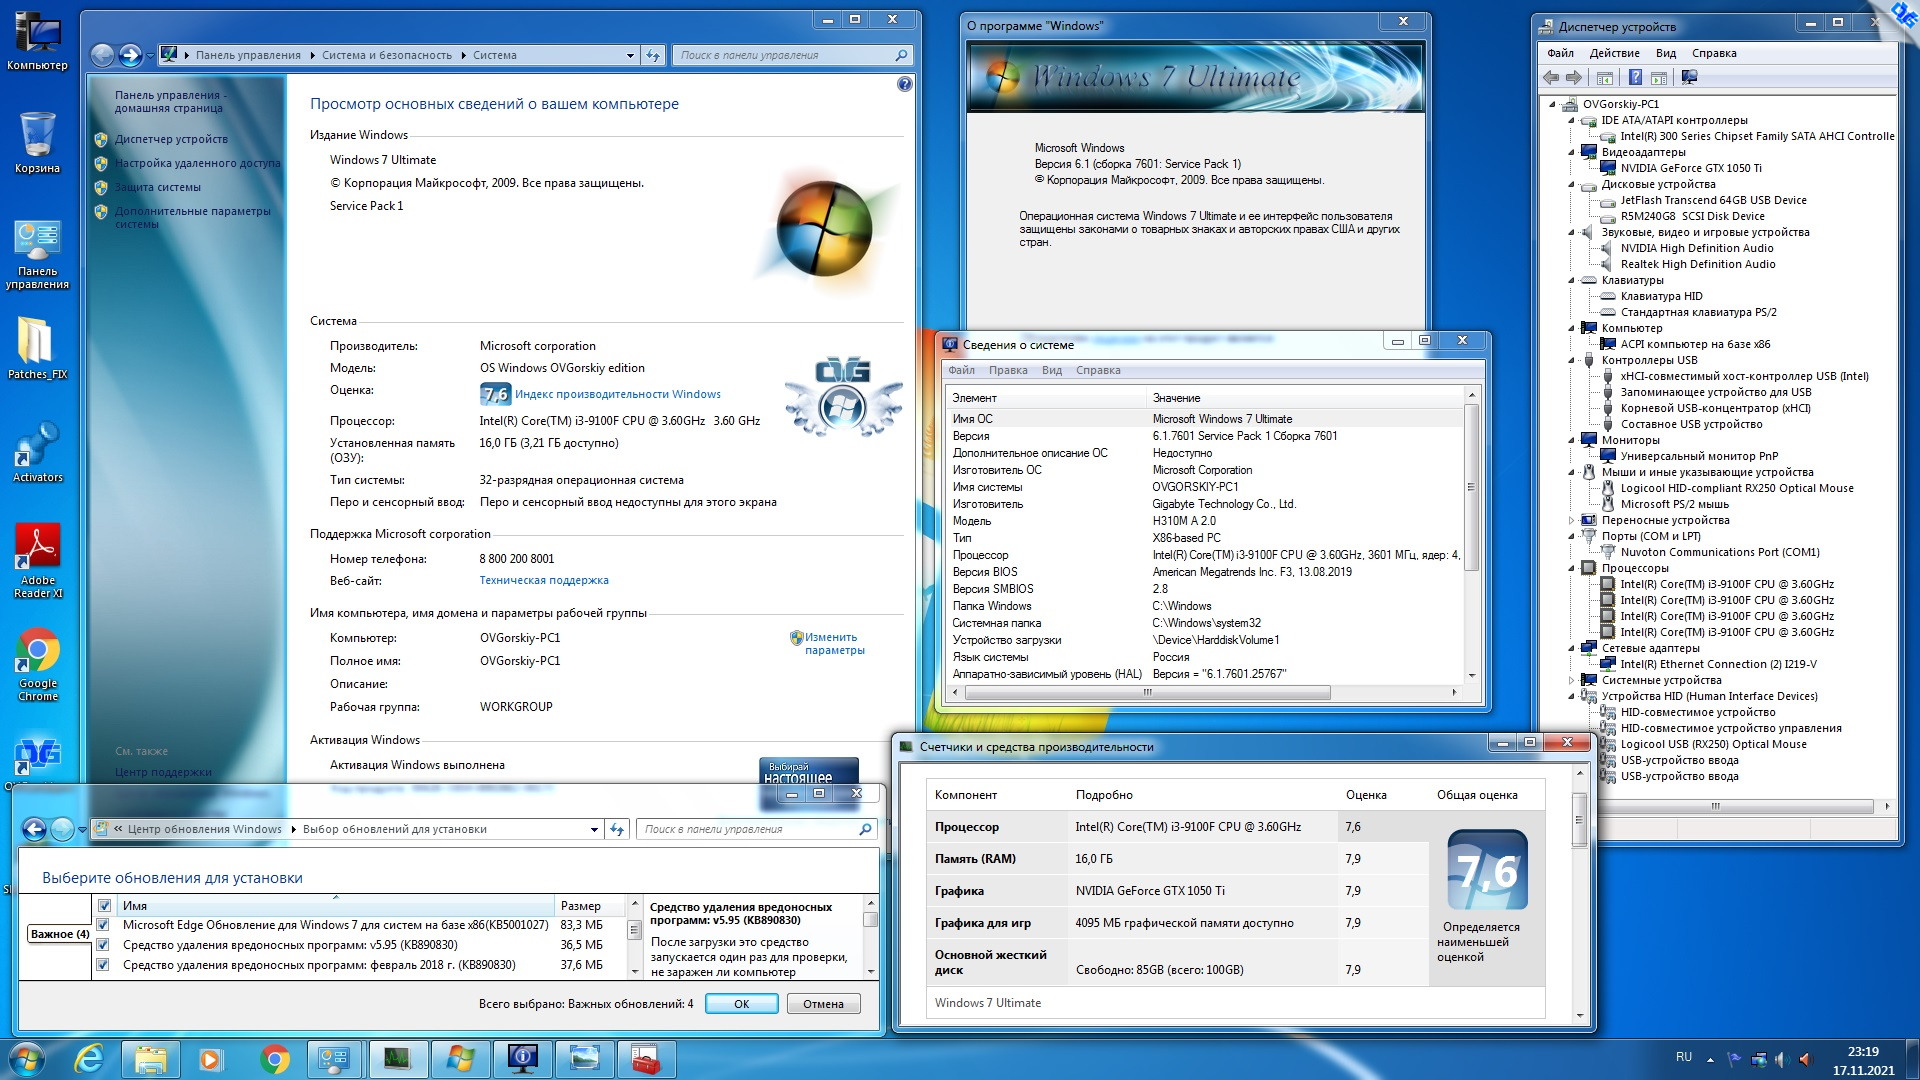 Microsoft® Windows® 7 Ultimate Ru x86 SP1 7DB by OVGorskiy 11.2021 1DVD